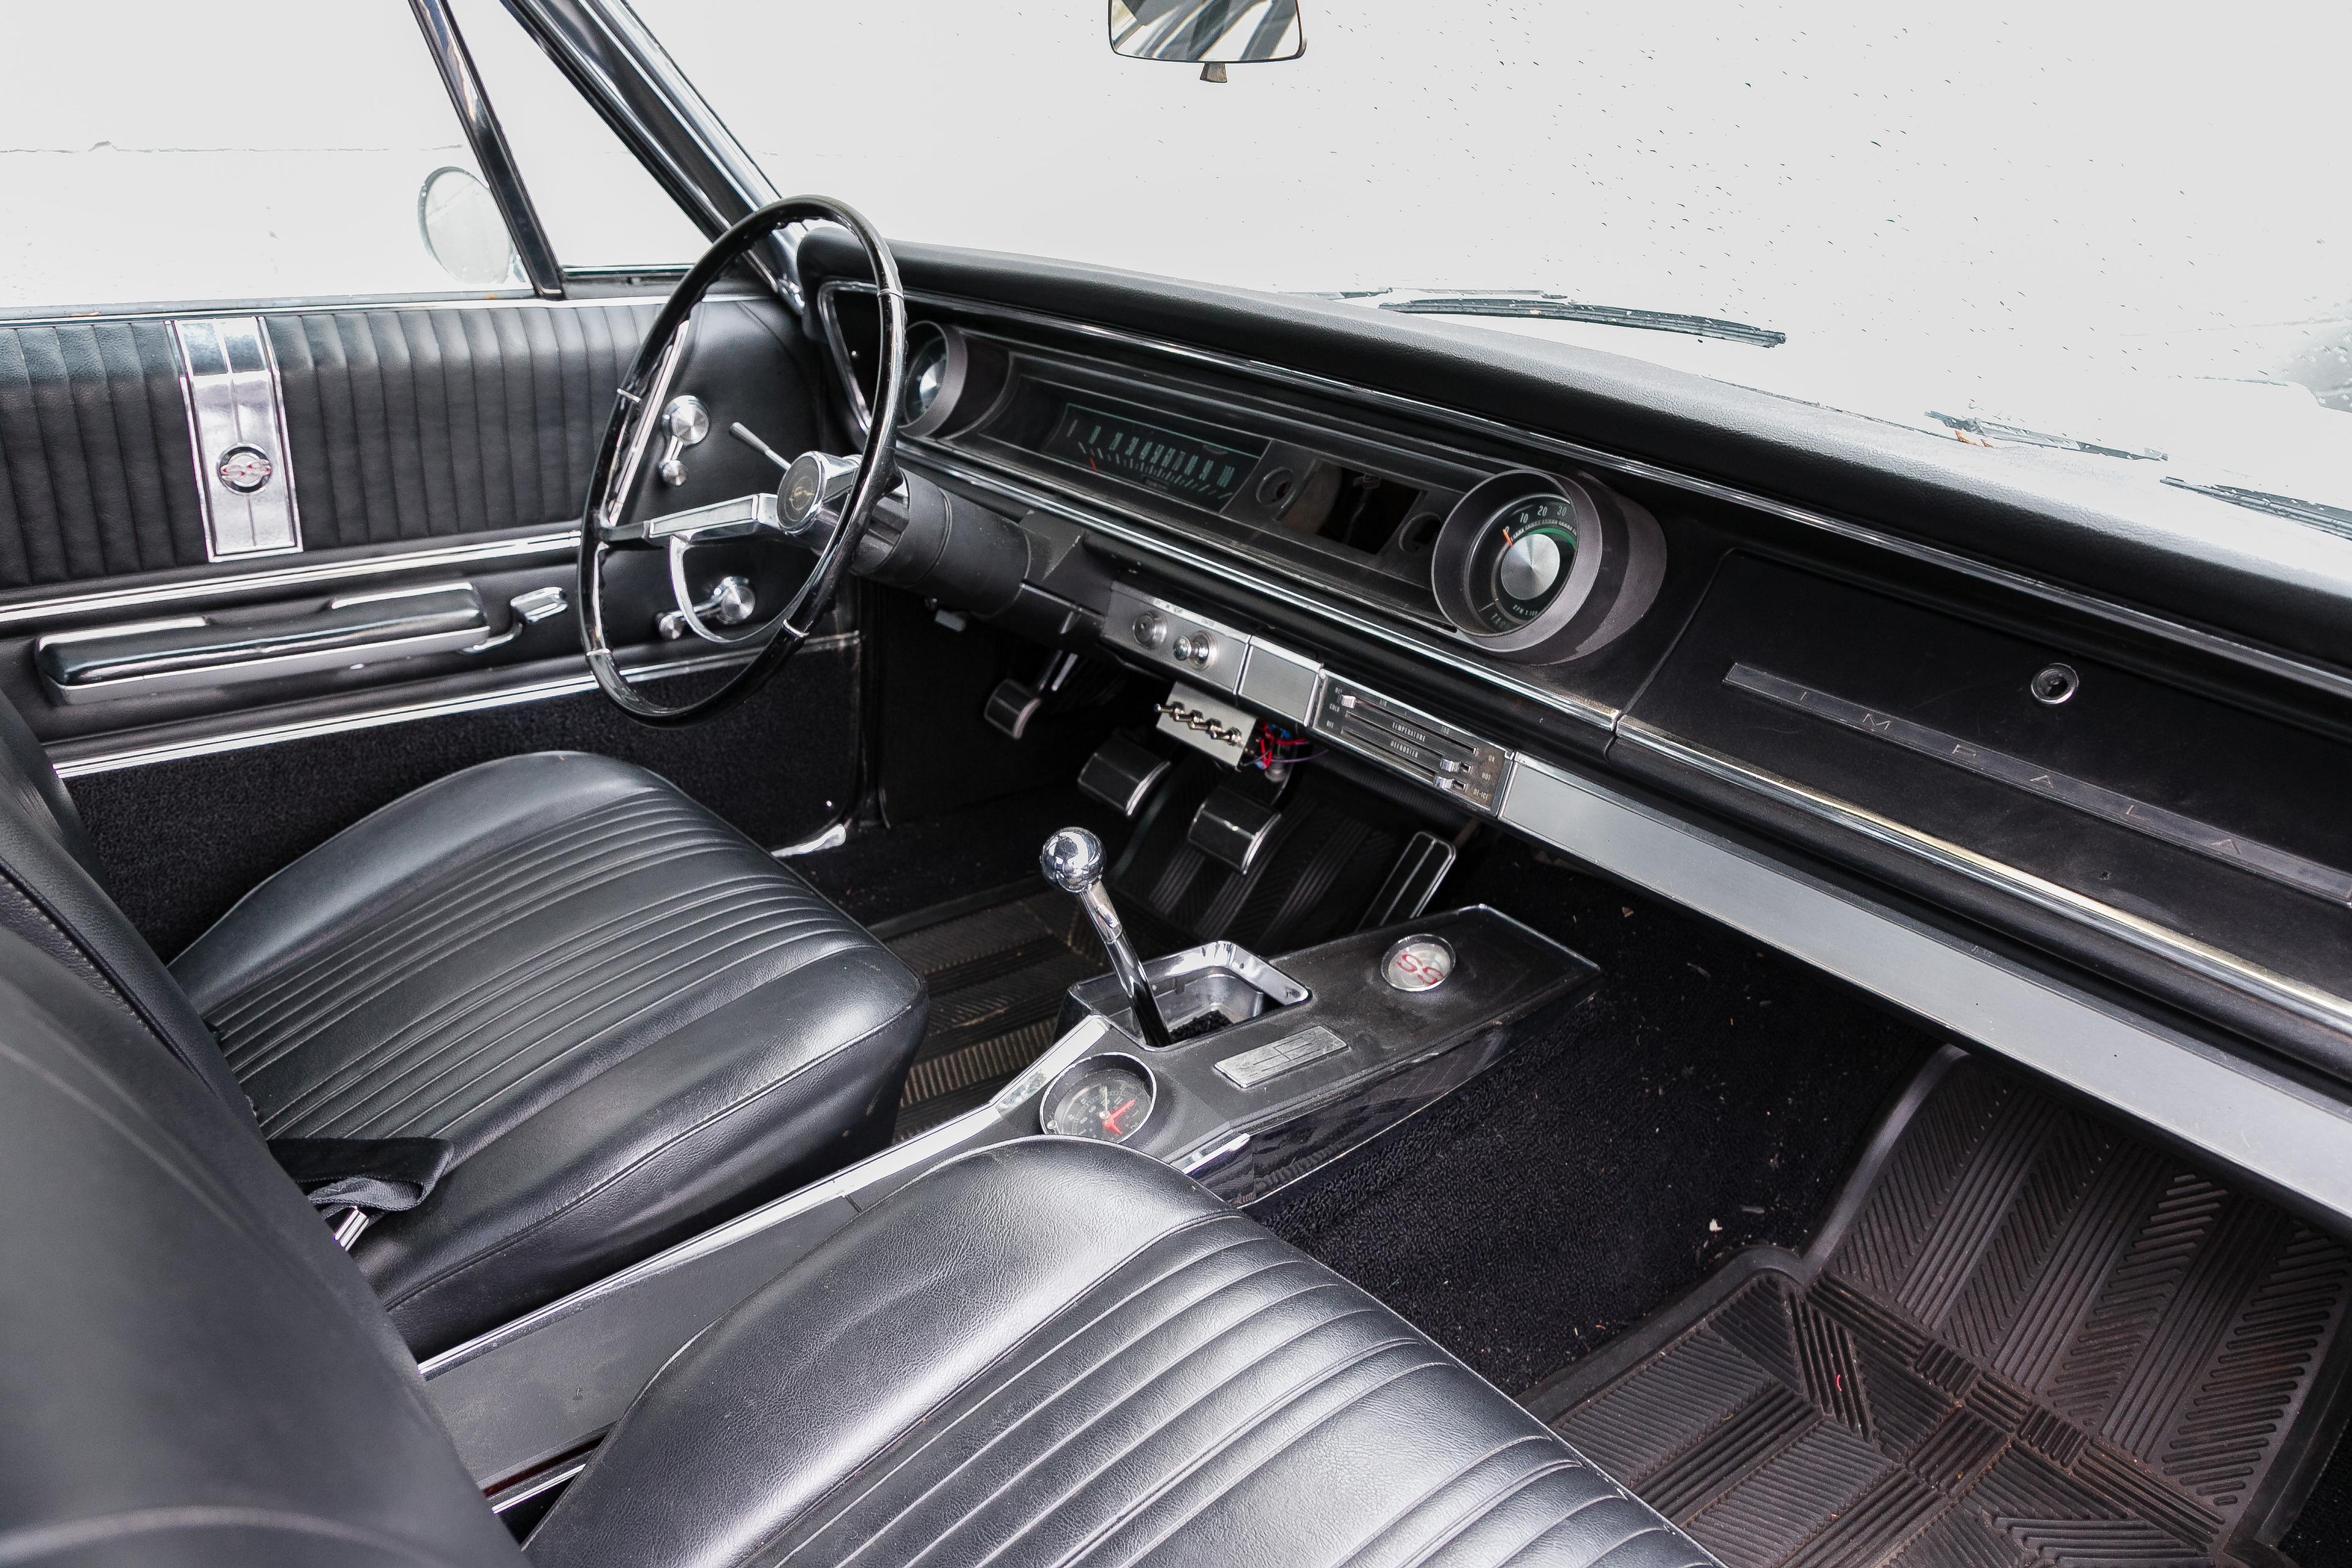 1965 Chevrolet Impala SS 2-Door Hardtop